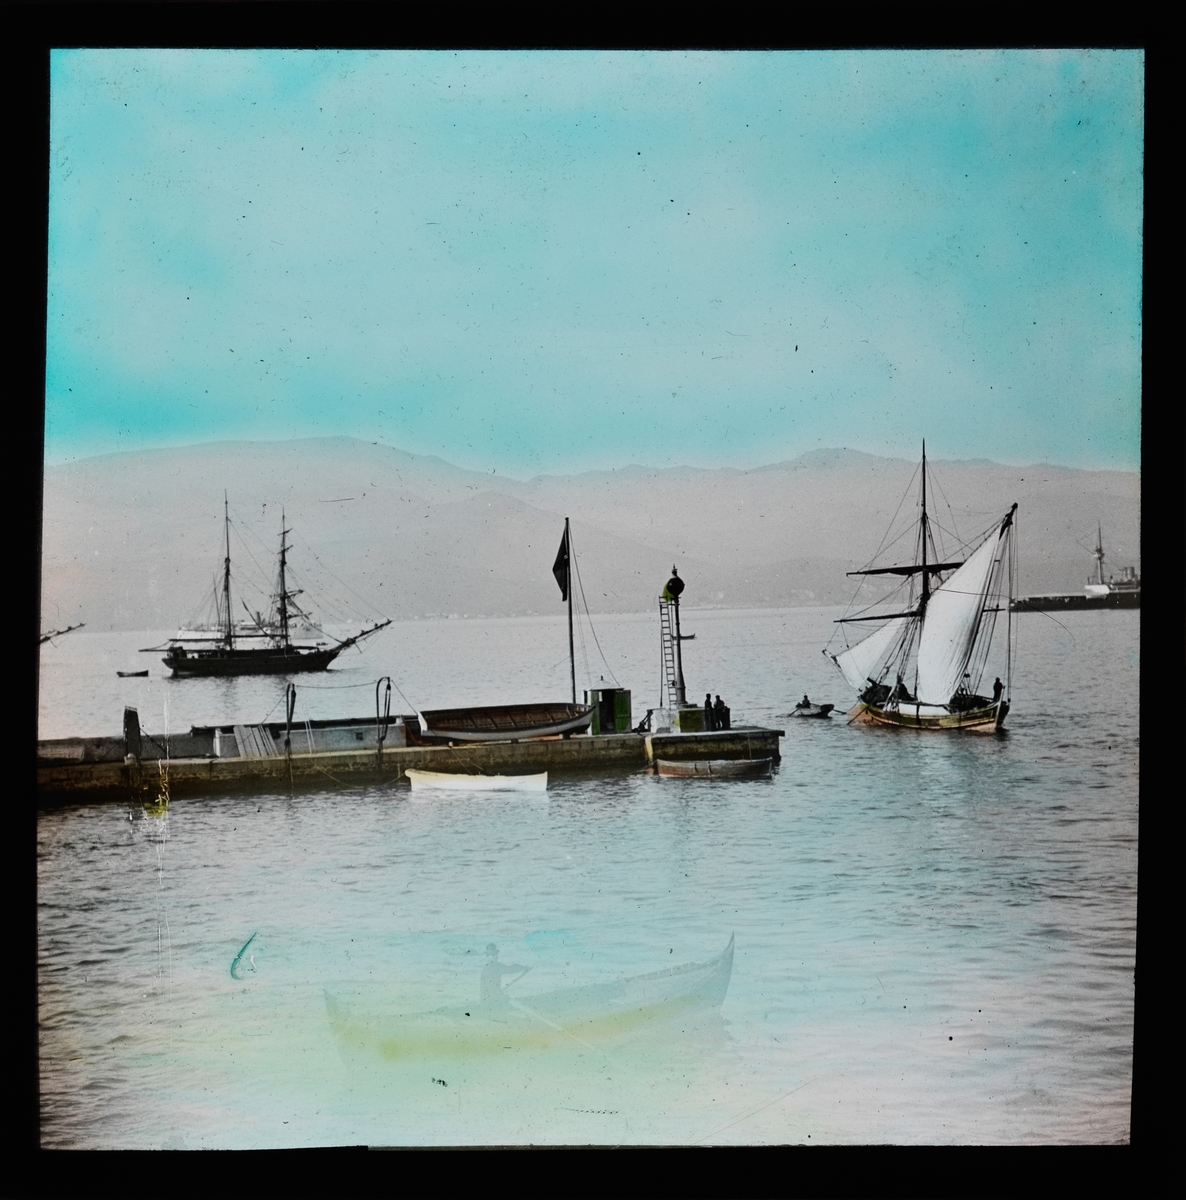 "Smyrna." (Bildetekst fra album) En kai/brygge. Mange seilbåter ute på vannet. Håndkolorert utsnitt.